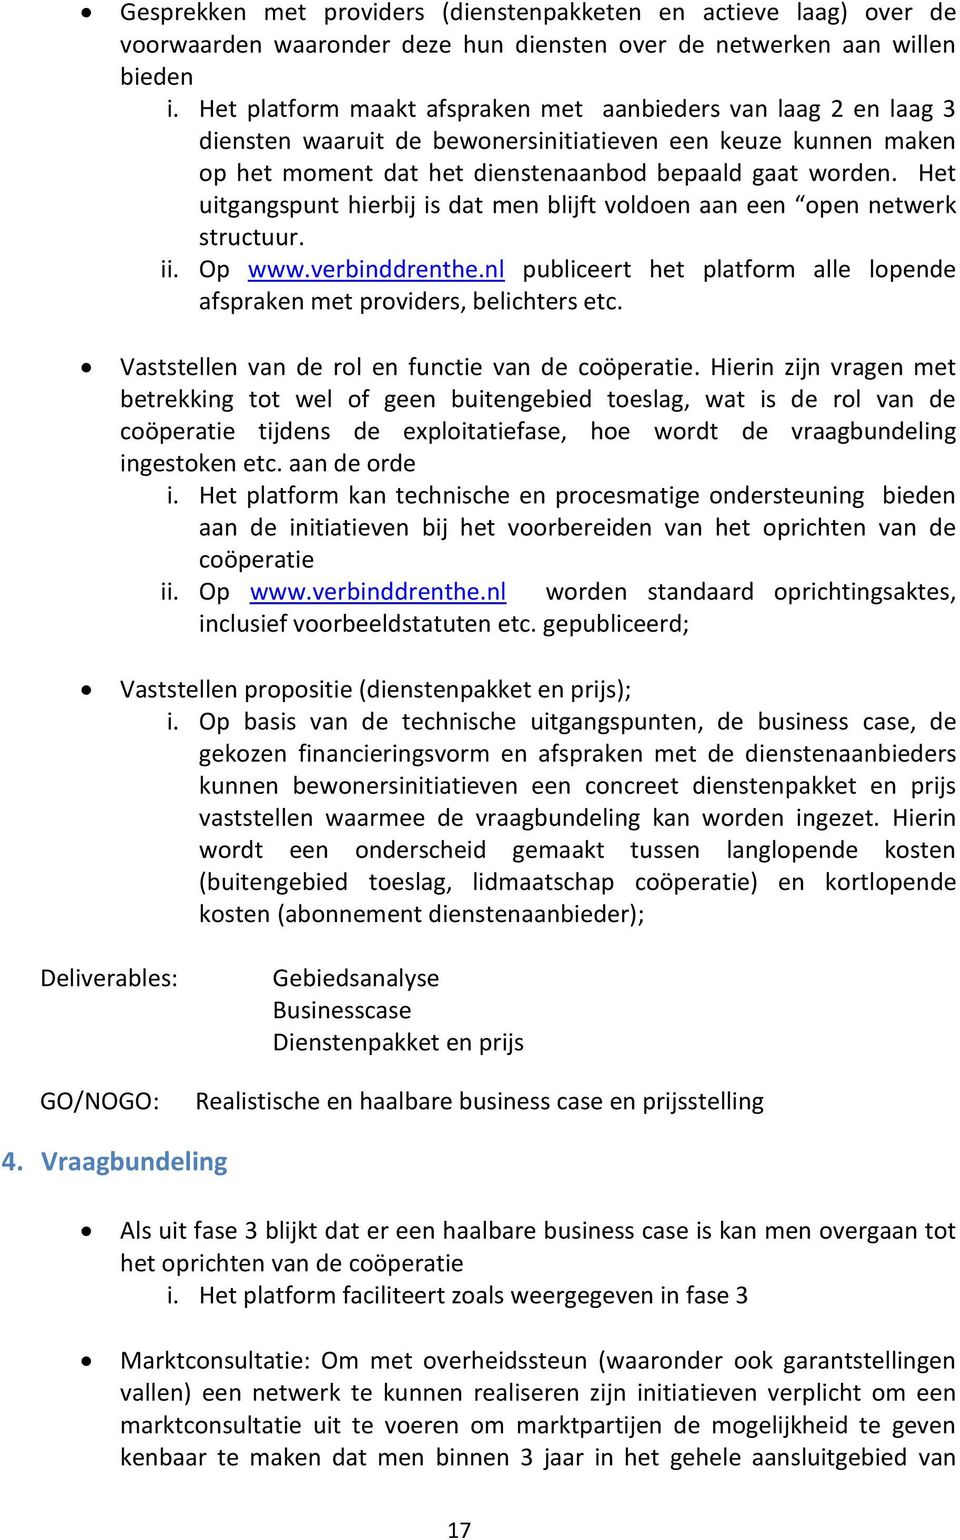 Het uitgangspunt hierbij is dat men blijft voldoen aan een open netwerk structuur. ii. Op www.verbinddrenthe.nl publiceert het platform alle lopende afspraken met providers, belichters etc.